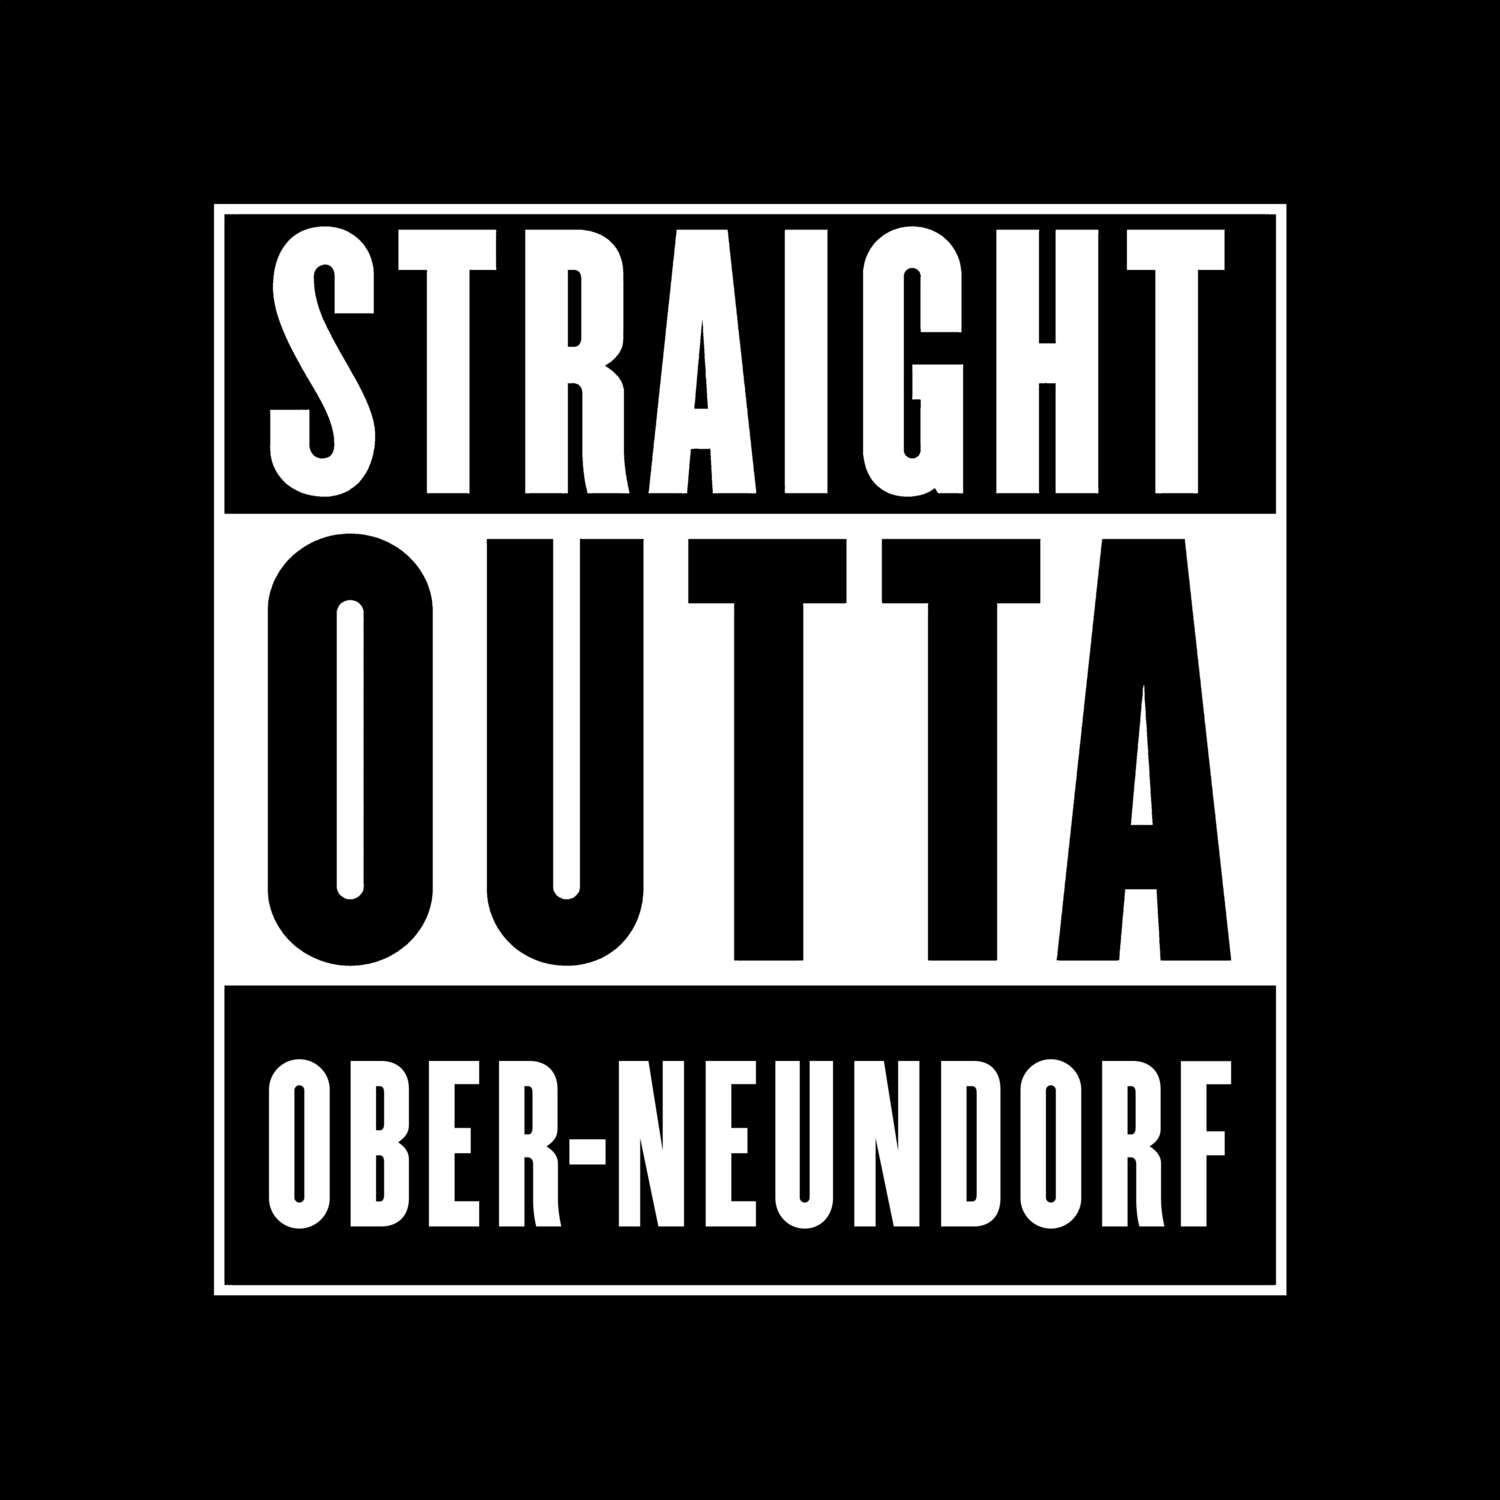 Ober-Neundorf T-Shirt »Straight Outta«